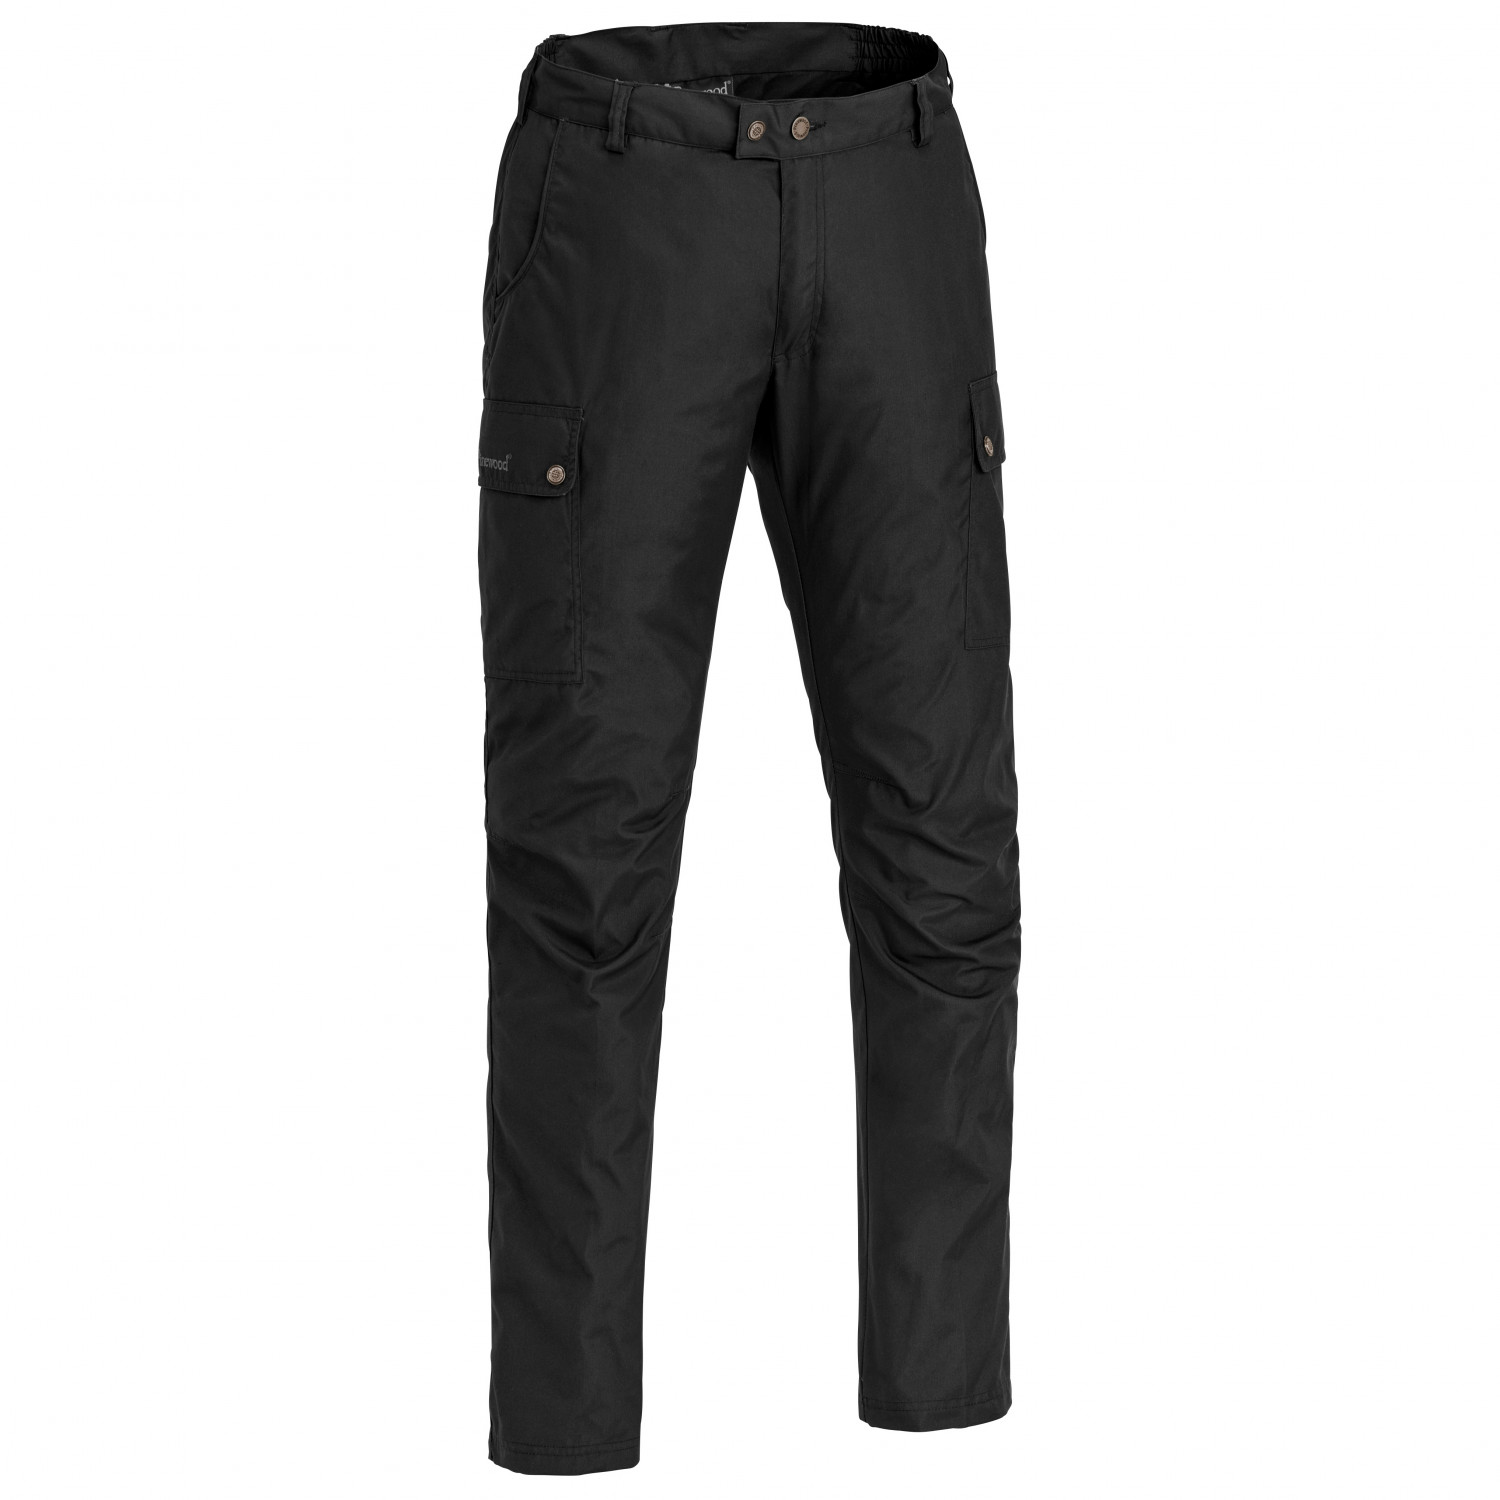 Трекинговые брюки Pinewood Finnveden Classic Trousers, черный